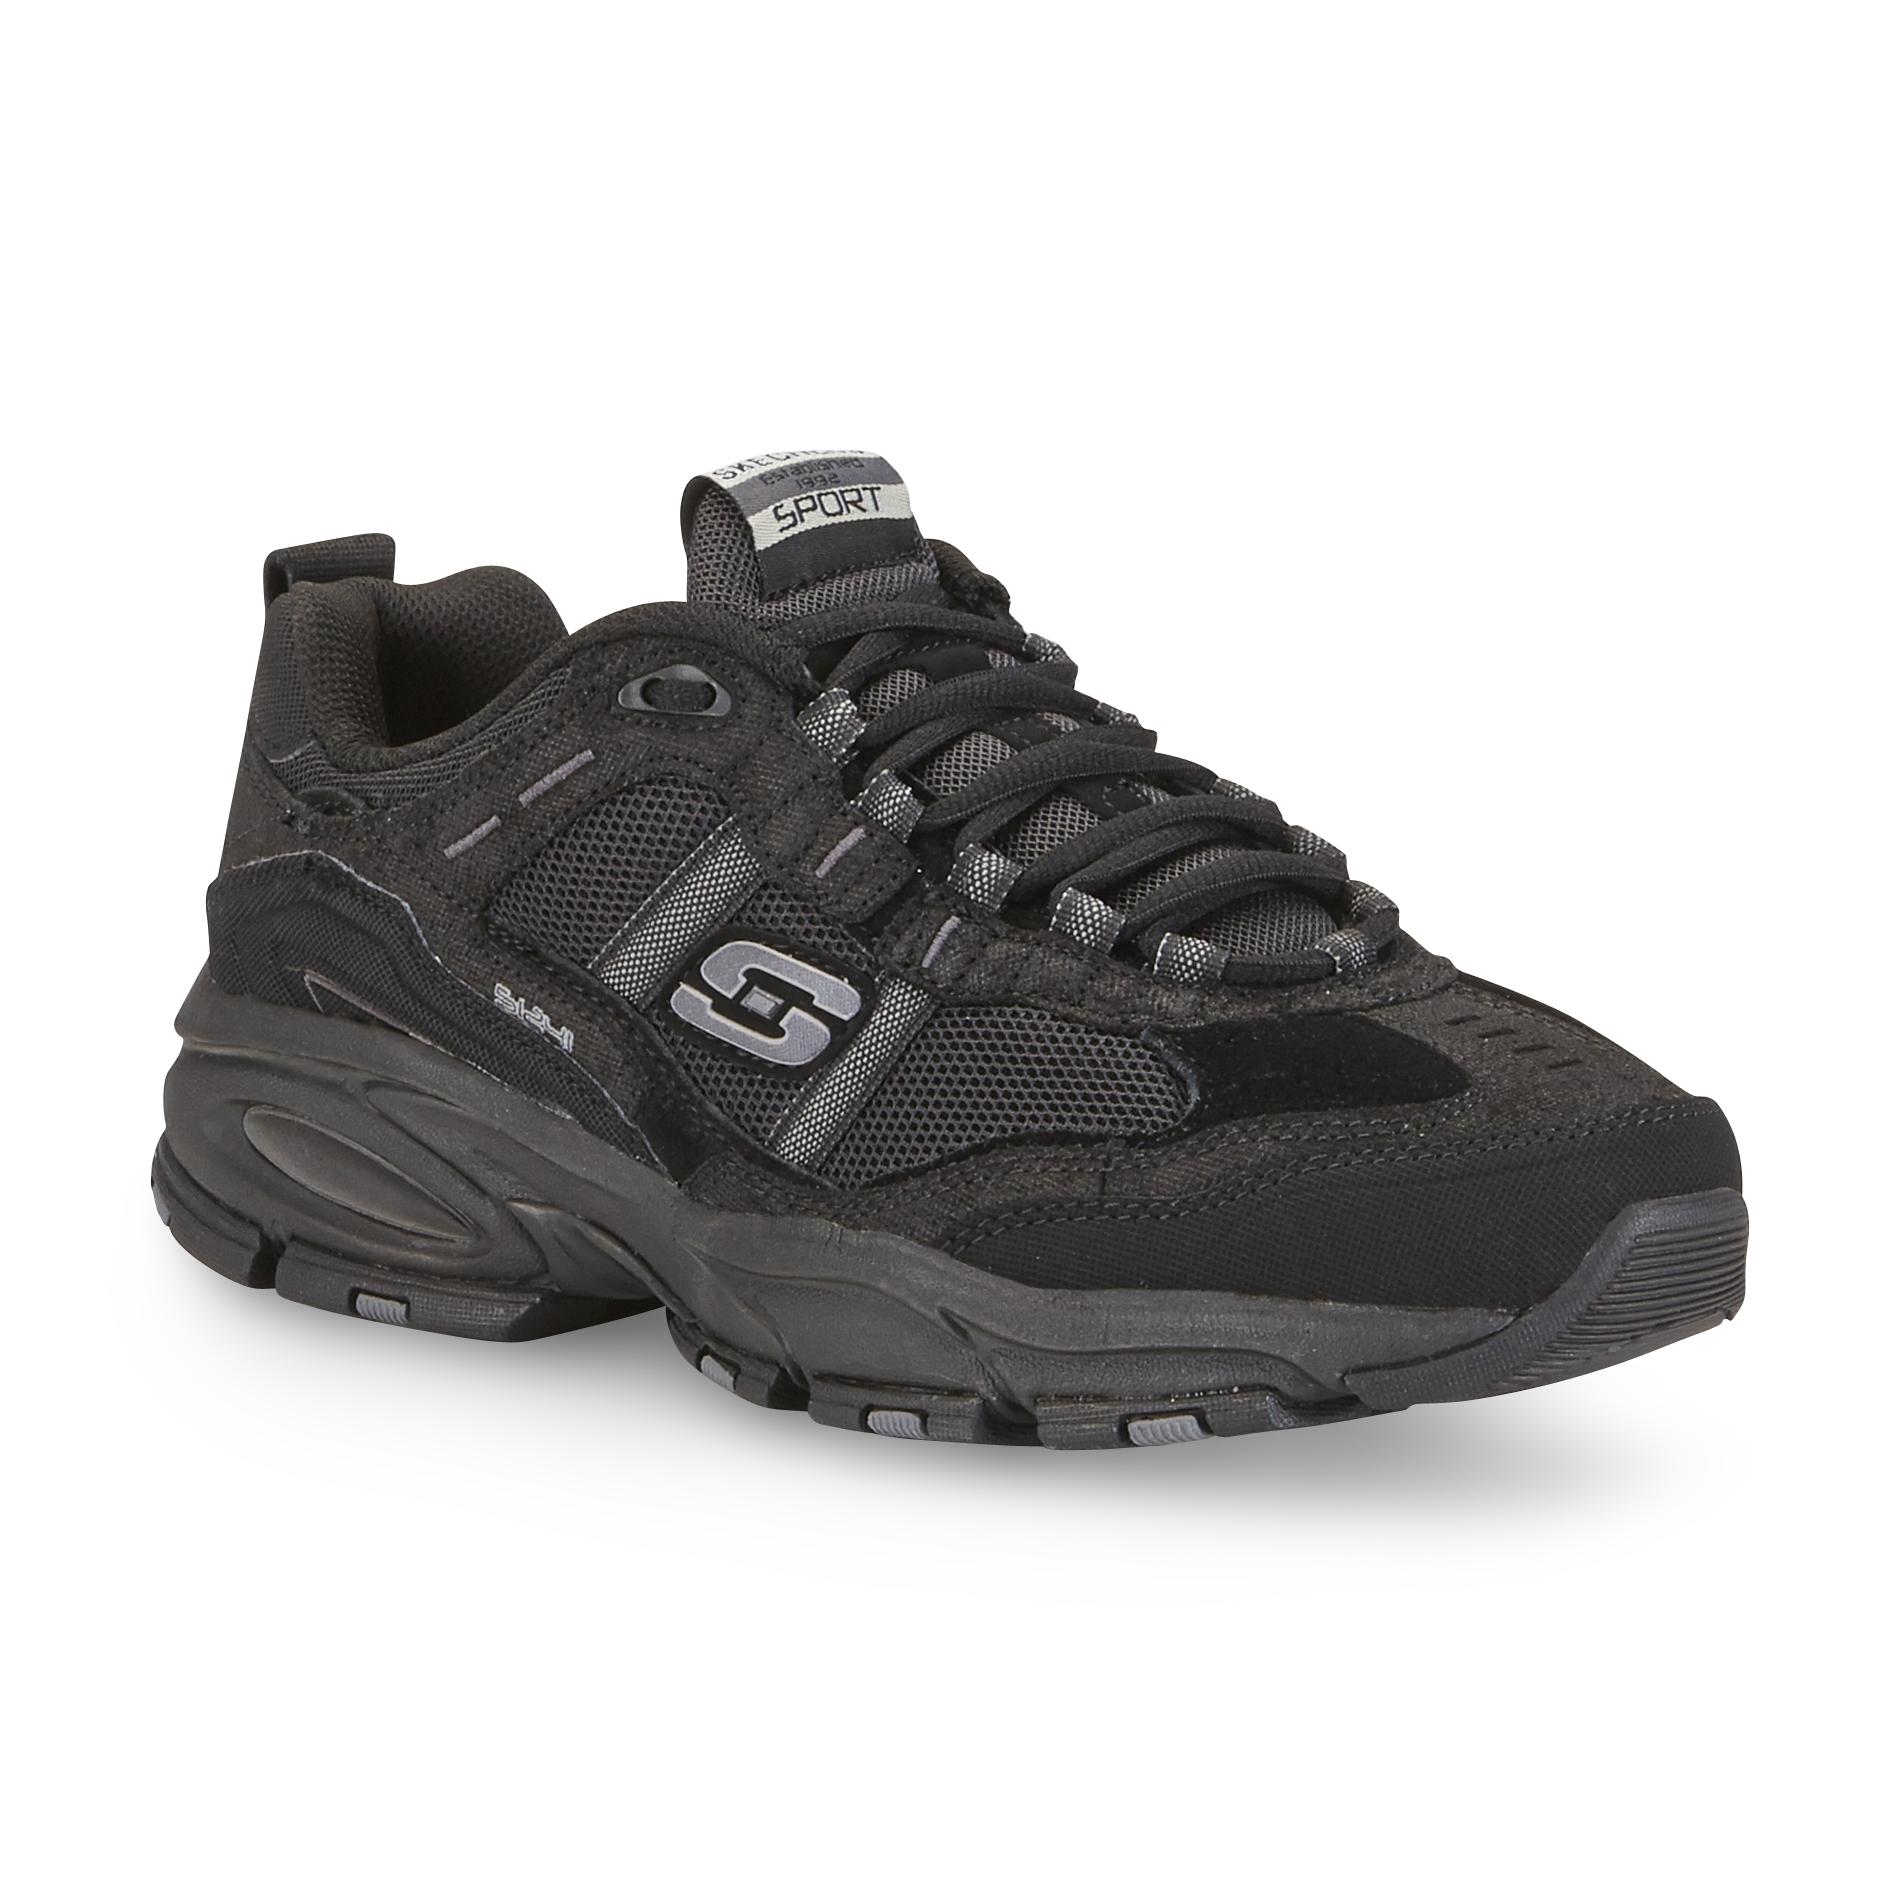 Skechers Men's Trait Athletic Shoe - Black